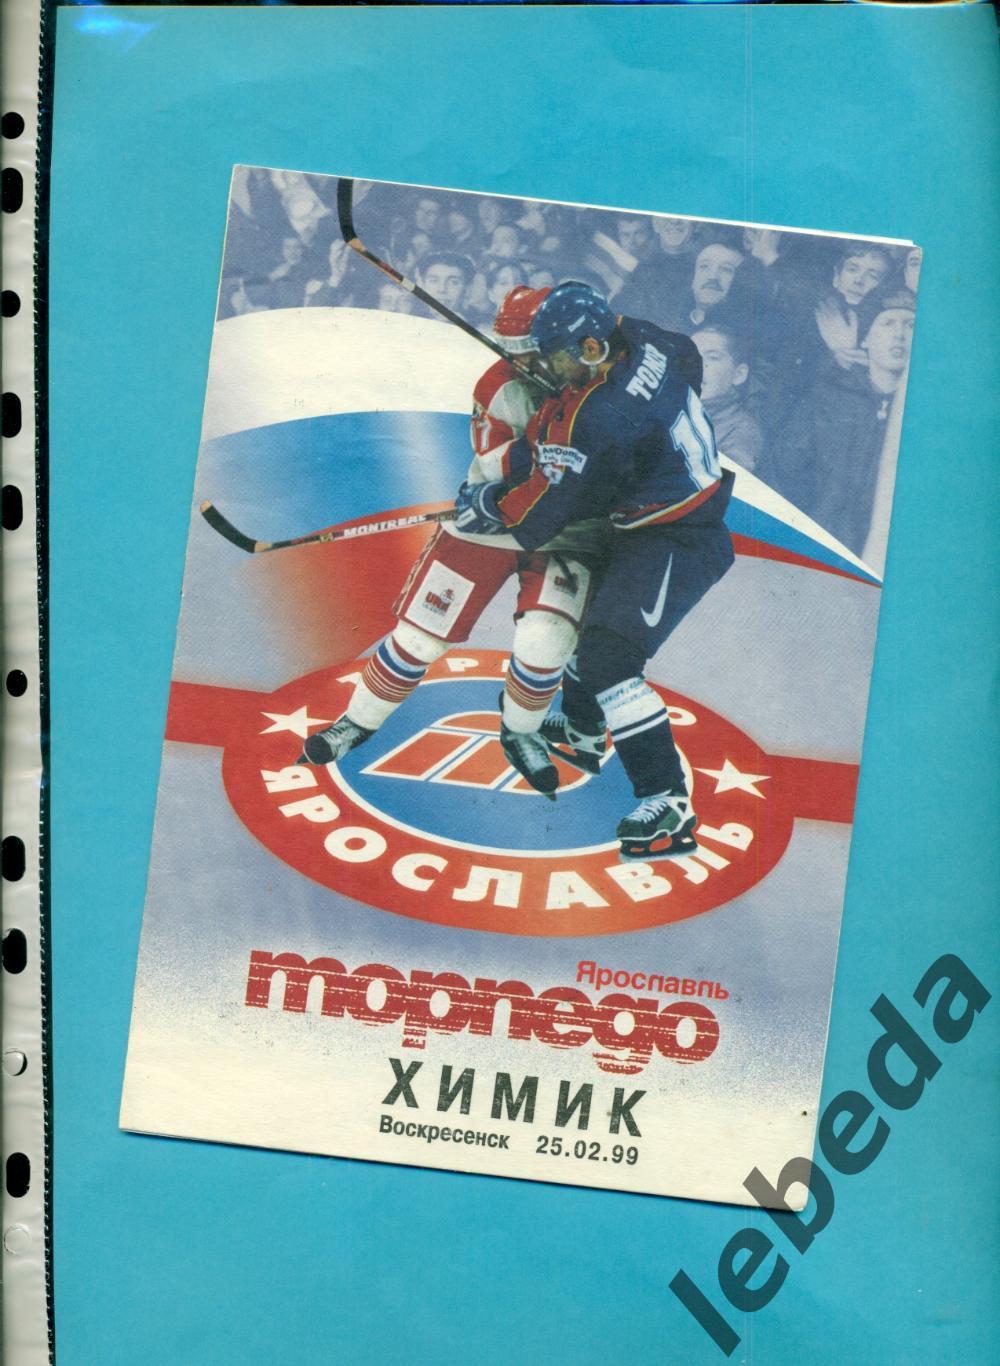 Торпедо Ярославль - Химик Воскресенск - 1998 / 1999 год. (25.02.99.)